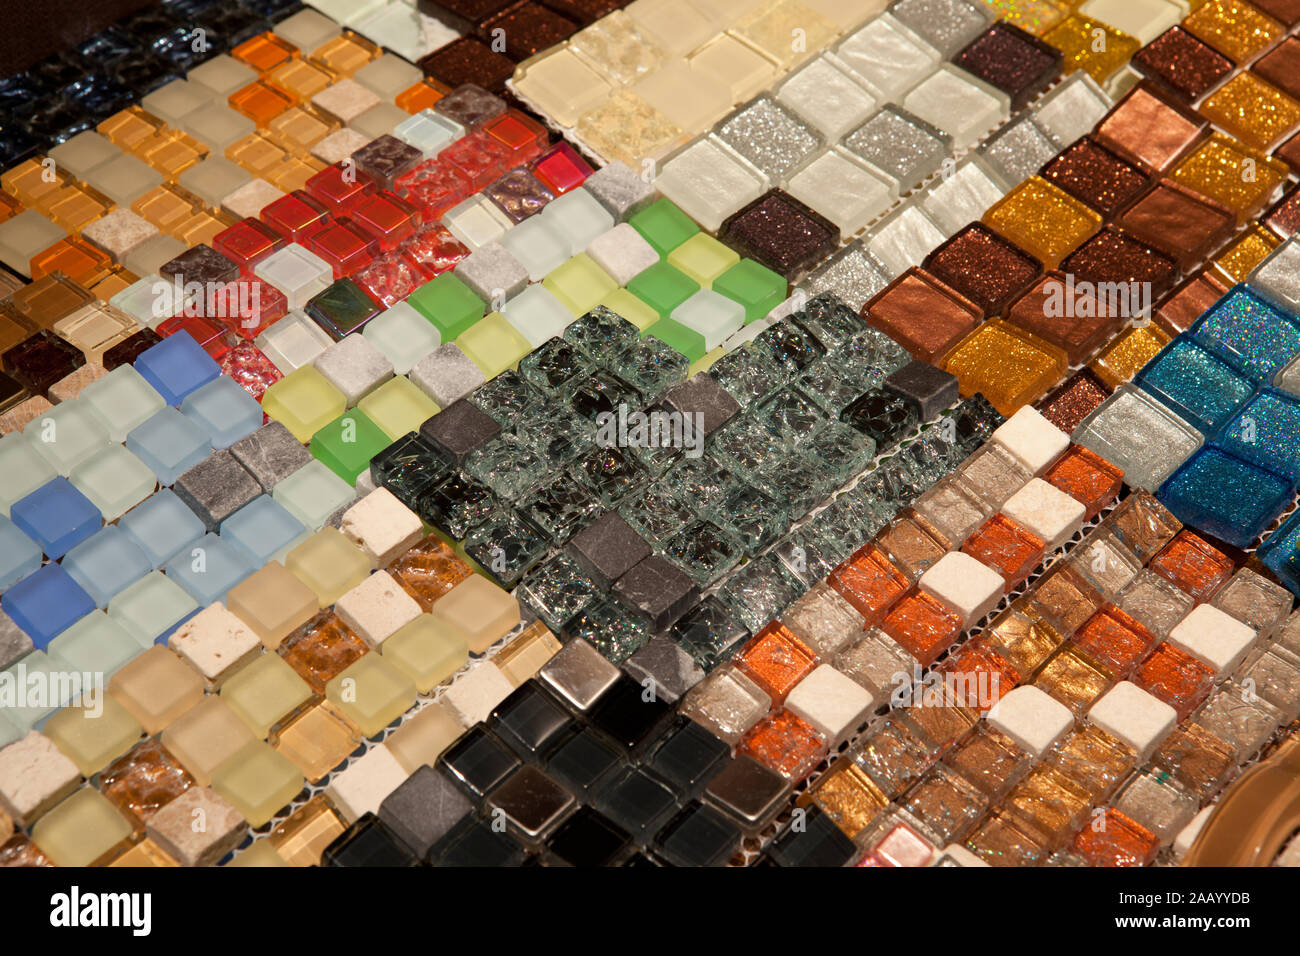 https://c8.alamy.com/compit/2aayydb/tessere-mosaico-texture-di-diversi-colori-e-tonalita-bagno-per-il-pavimento-della-cucina-e-le-pareti-sono-usati-per-riparare-i-locali-struttura-di-arredamento-di-design-2aayydb.jpg